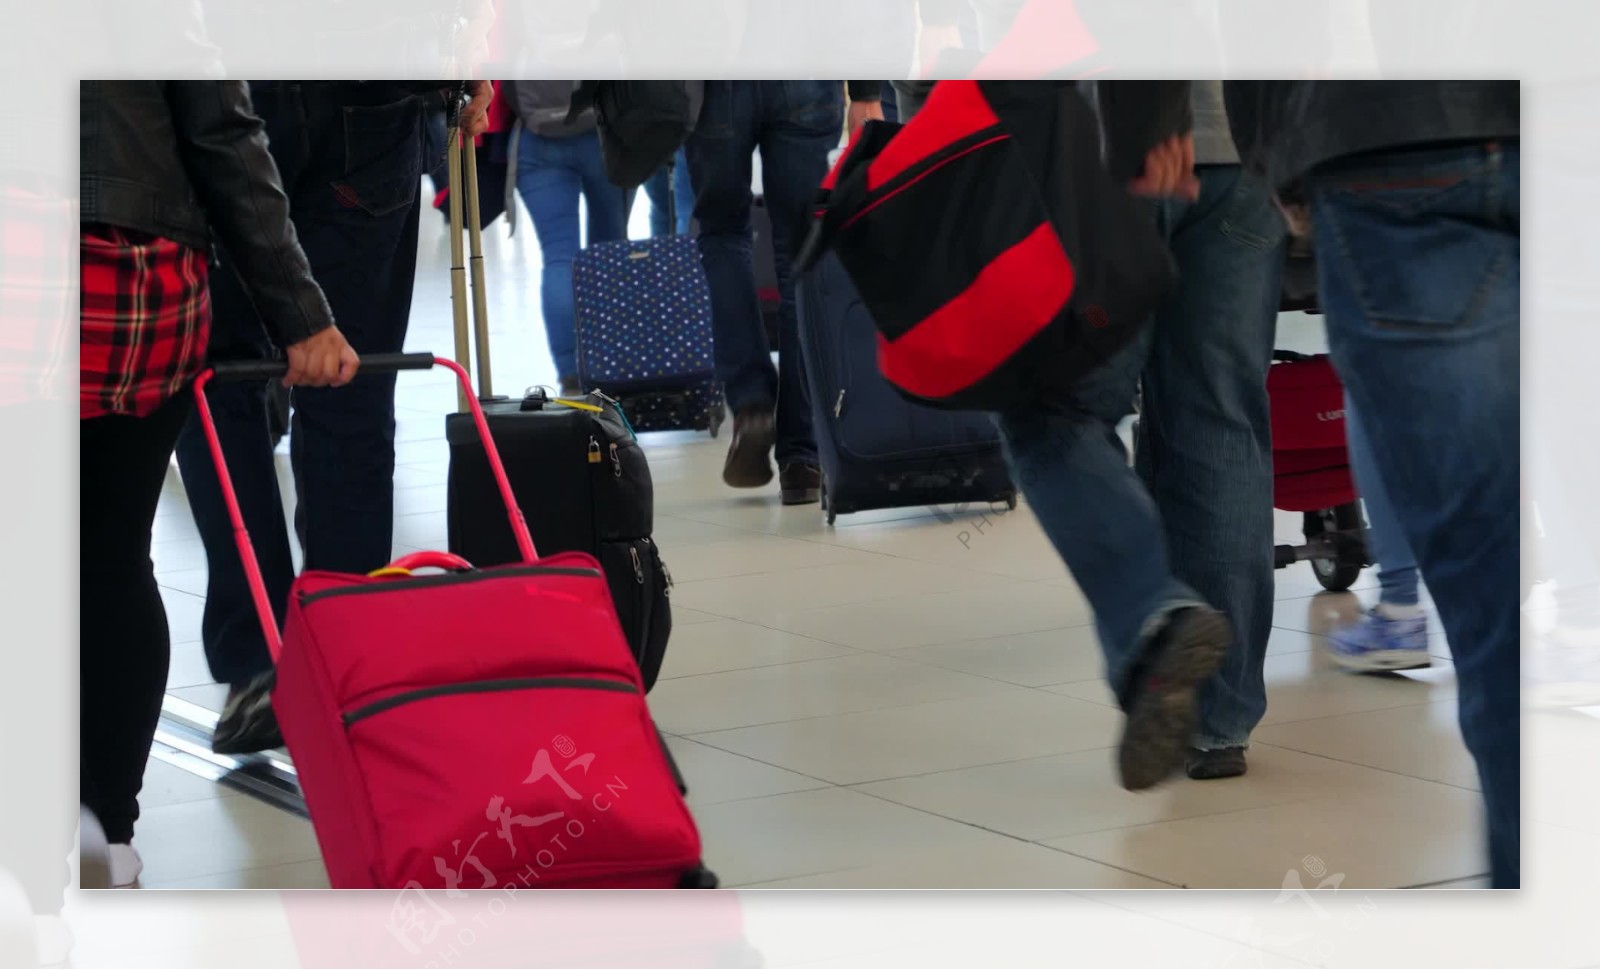 游客带着行李穿过机场